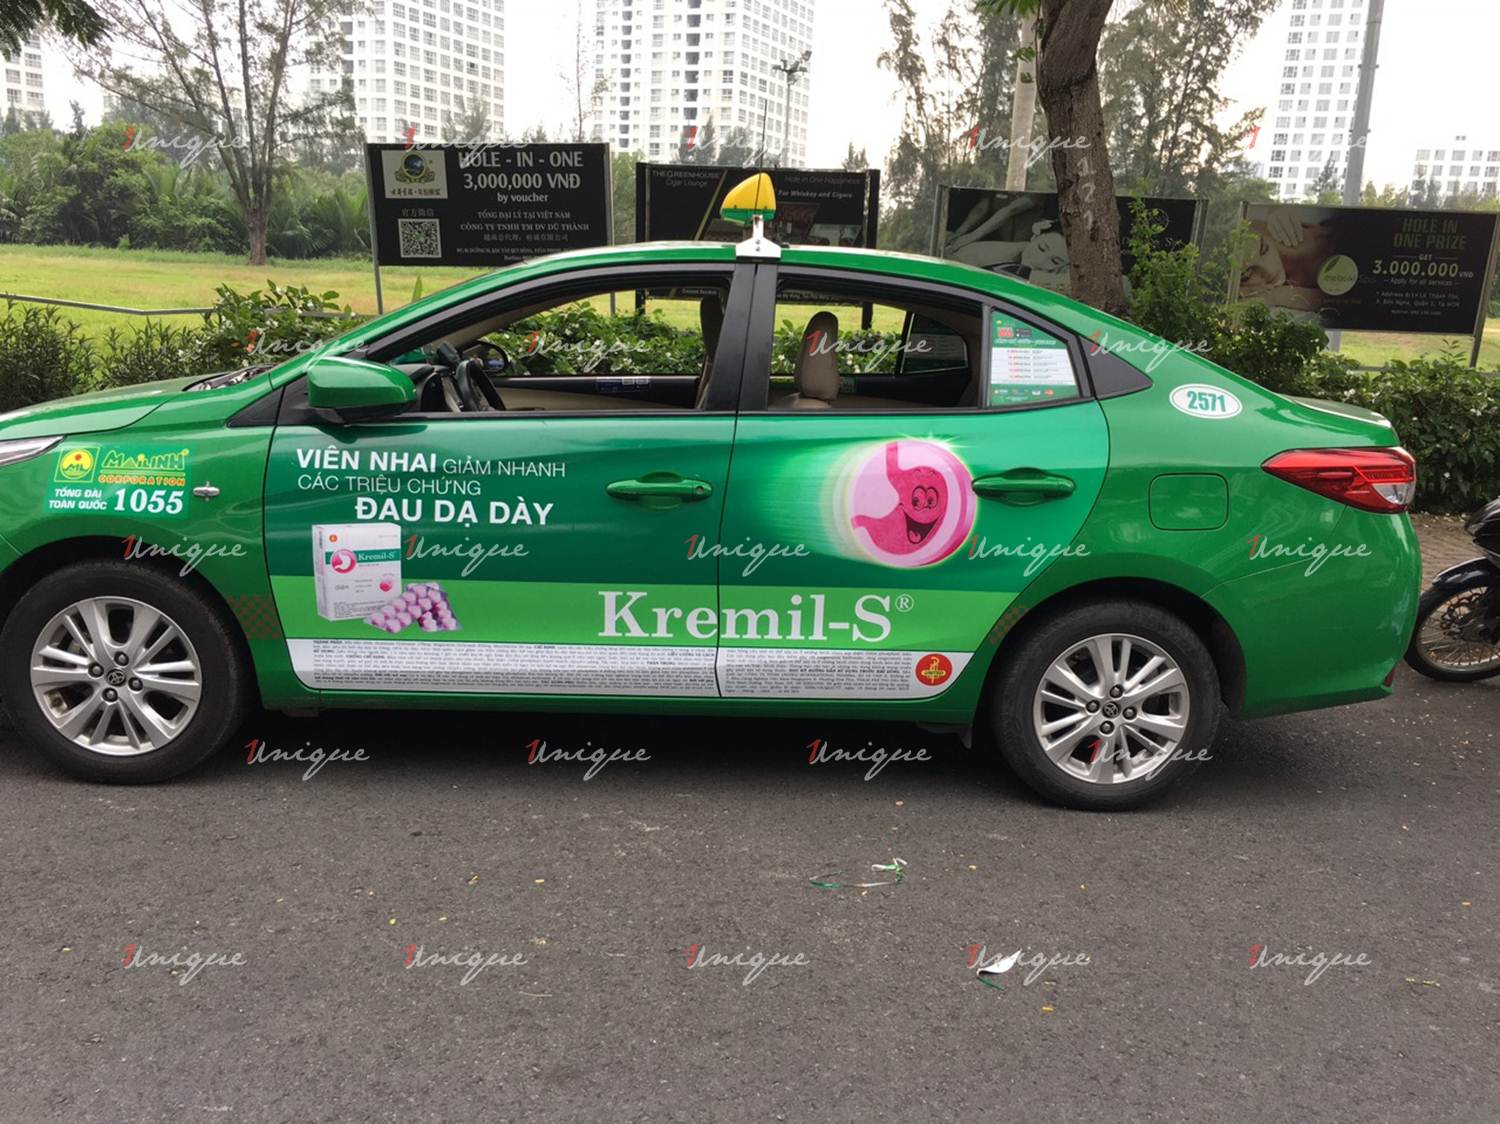 quảng cáo trên xe taxi tại Tiền Giang